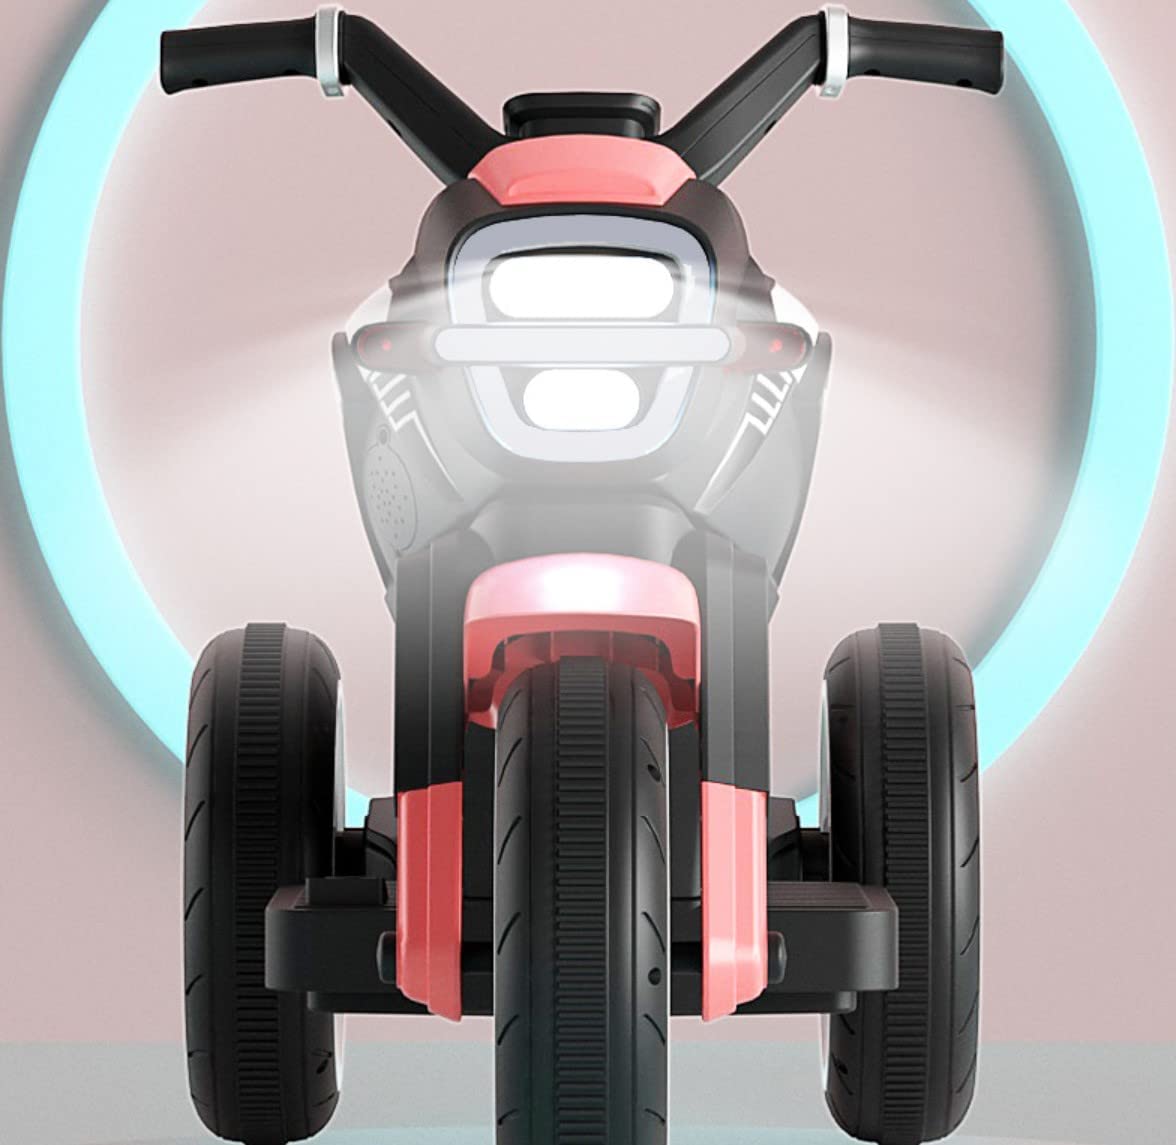 Megastar Ride On 6v Rapid Fire Motorcycle Trike for Kids-pink